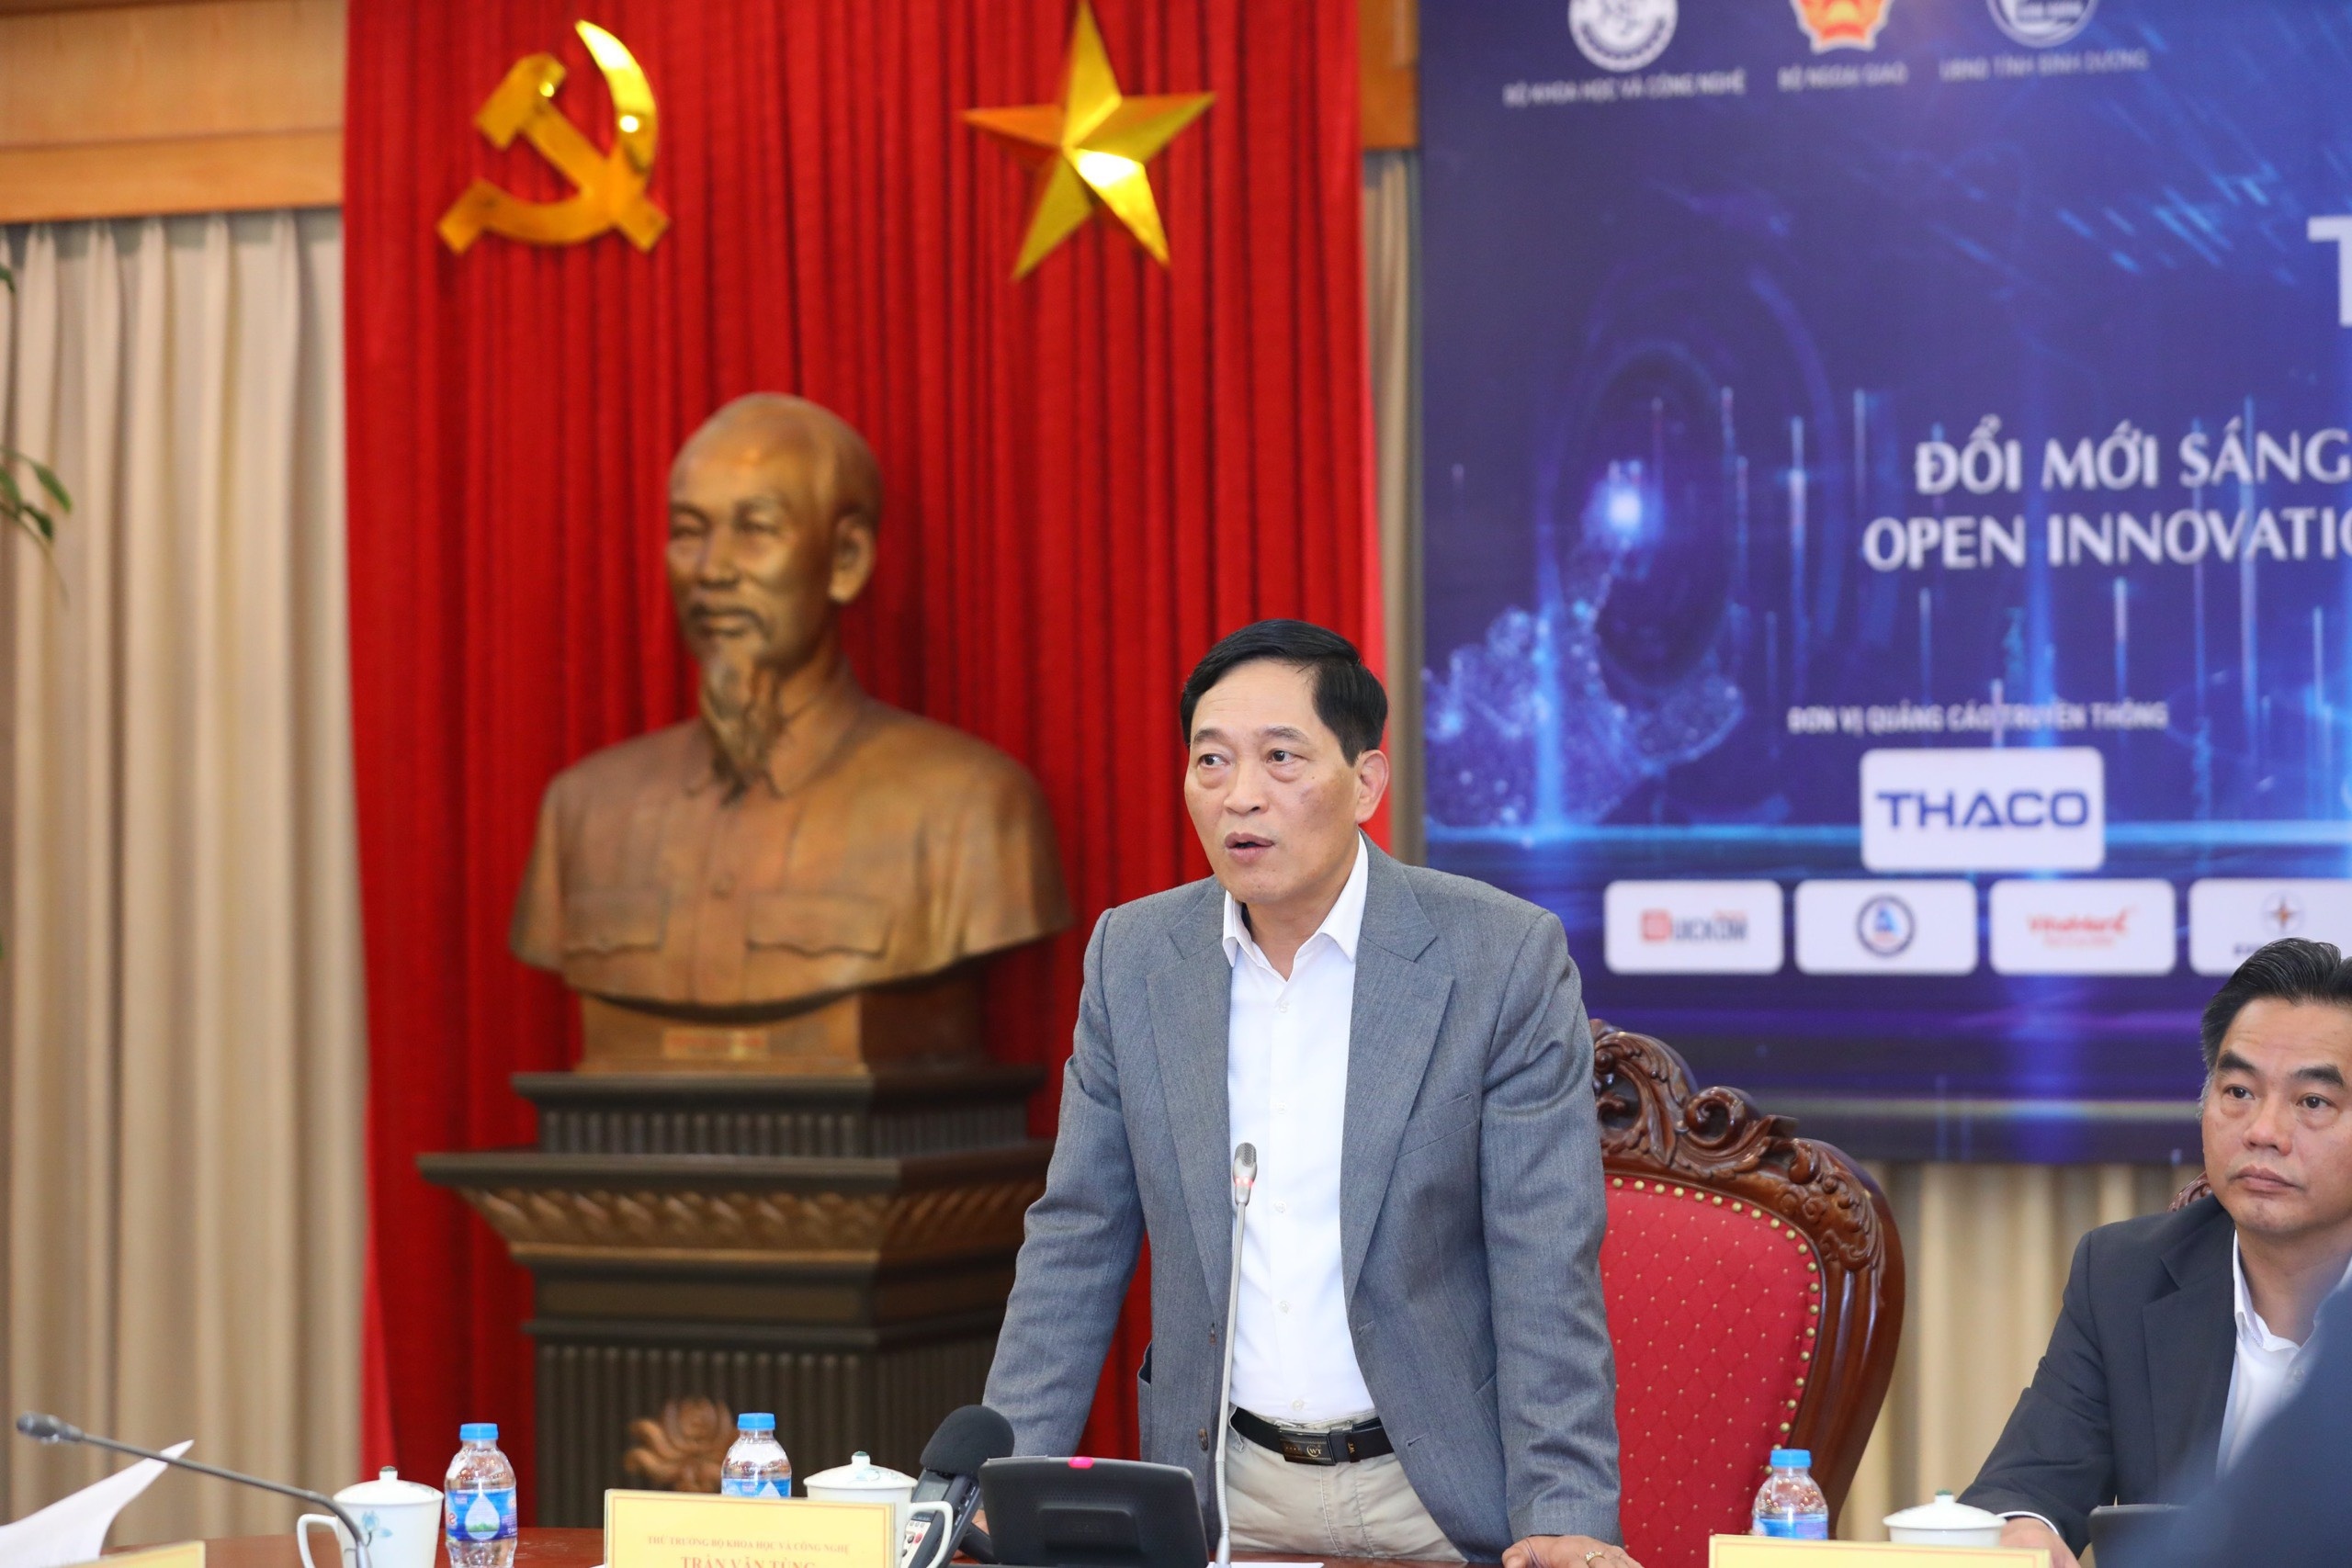 Bình Dương đăng cai sự kiện lớn nhất dành cho startup ở Việt Nam-3